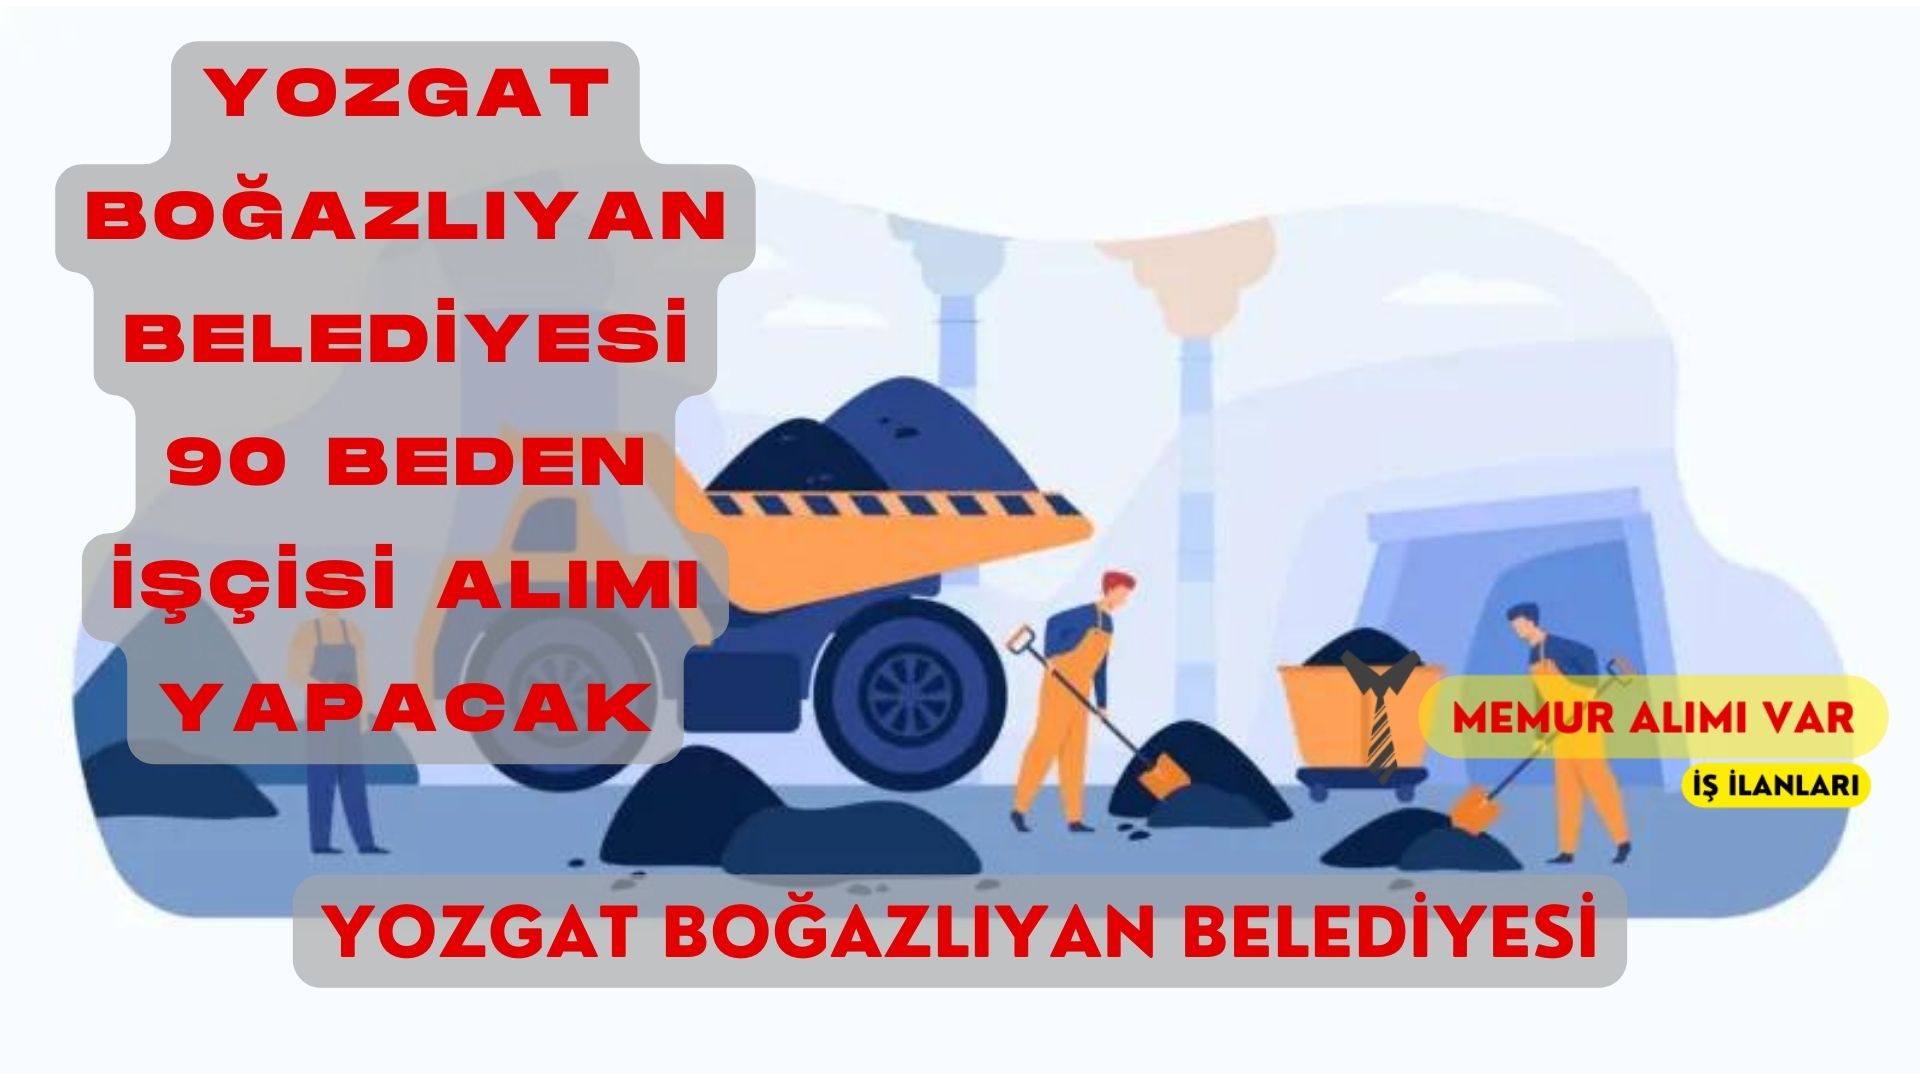 Yozgat Boğazlıyan Belediyesi 90 İşçi Alımı: İş İlanı Yayınlandı